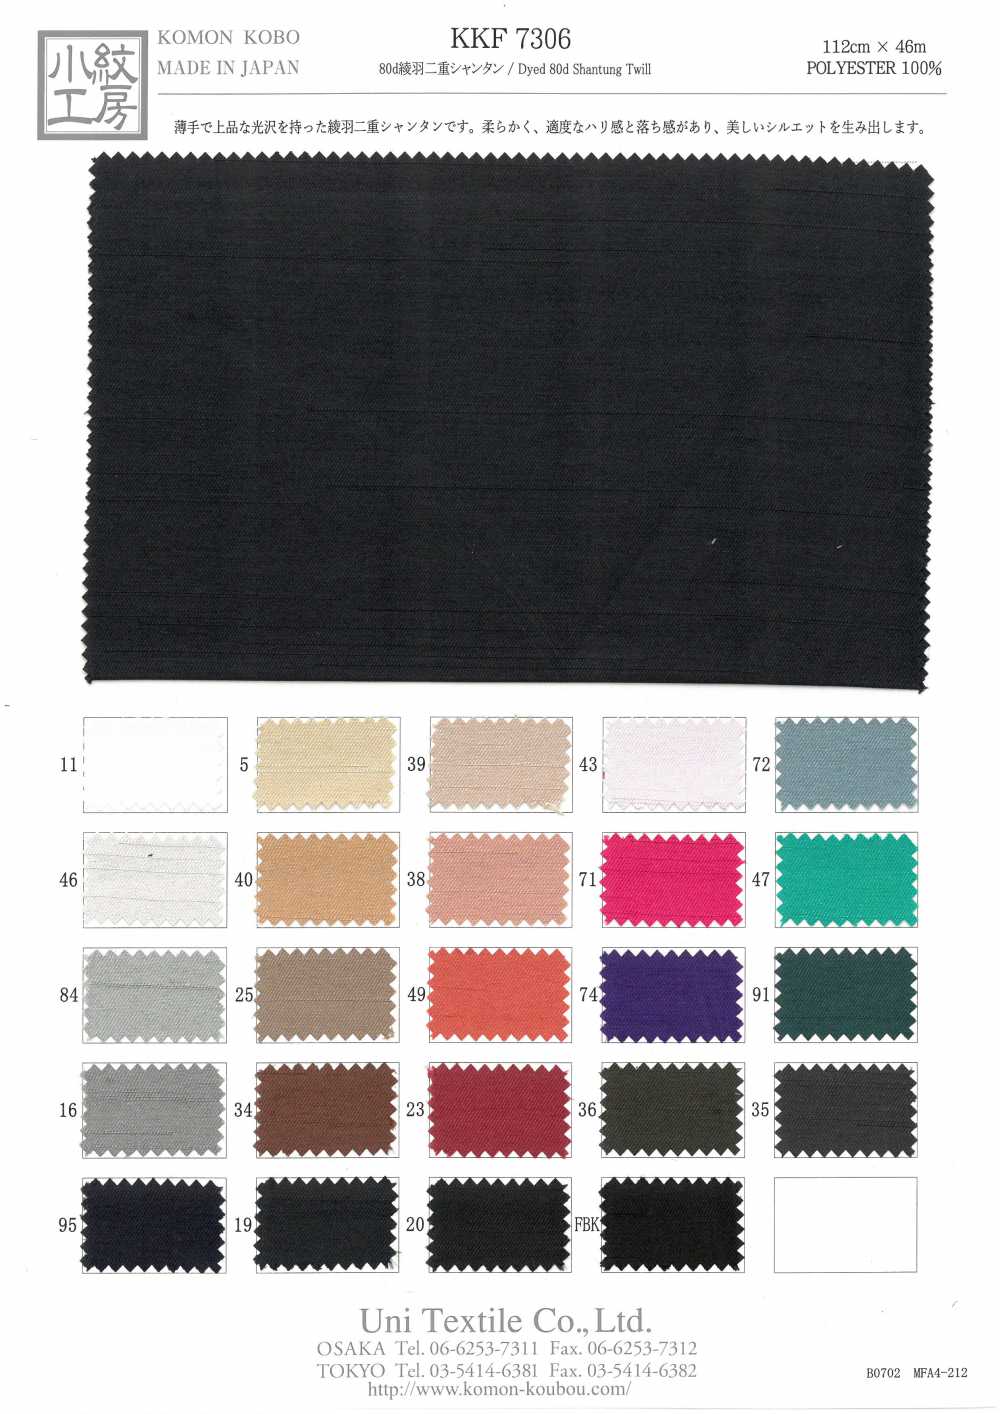 KKF7306 80d Twill Habutae Habutai Shantung[Têxtil / Tecido] Uni Textile